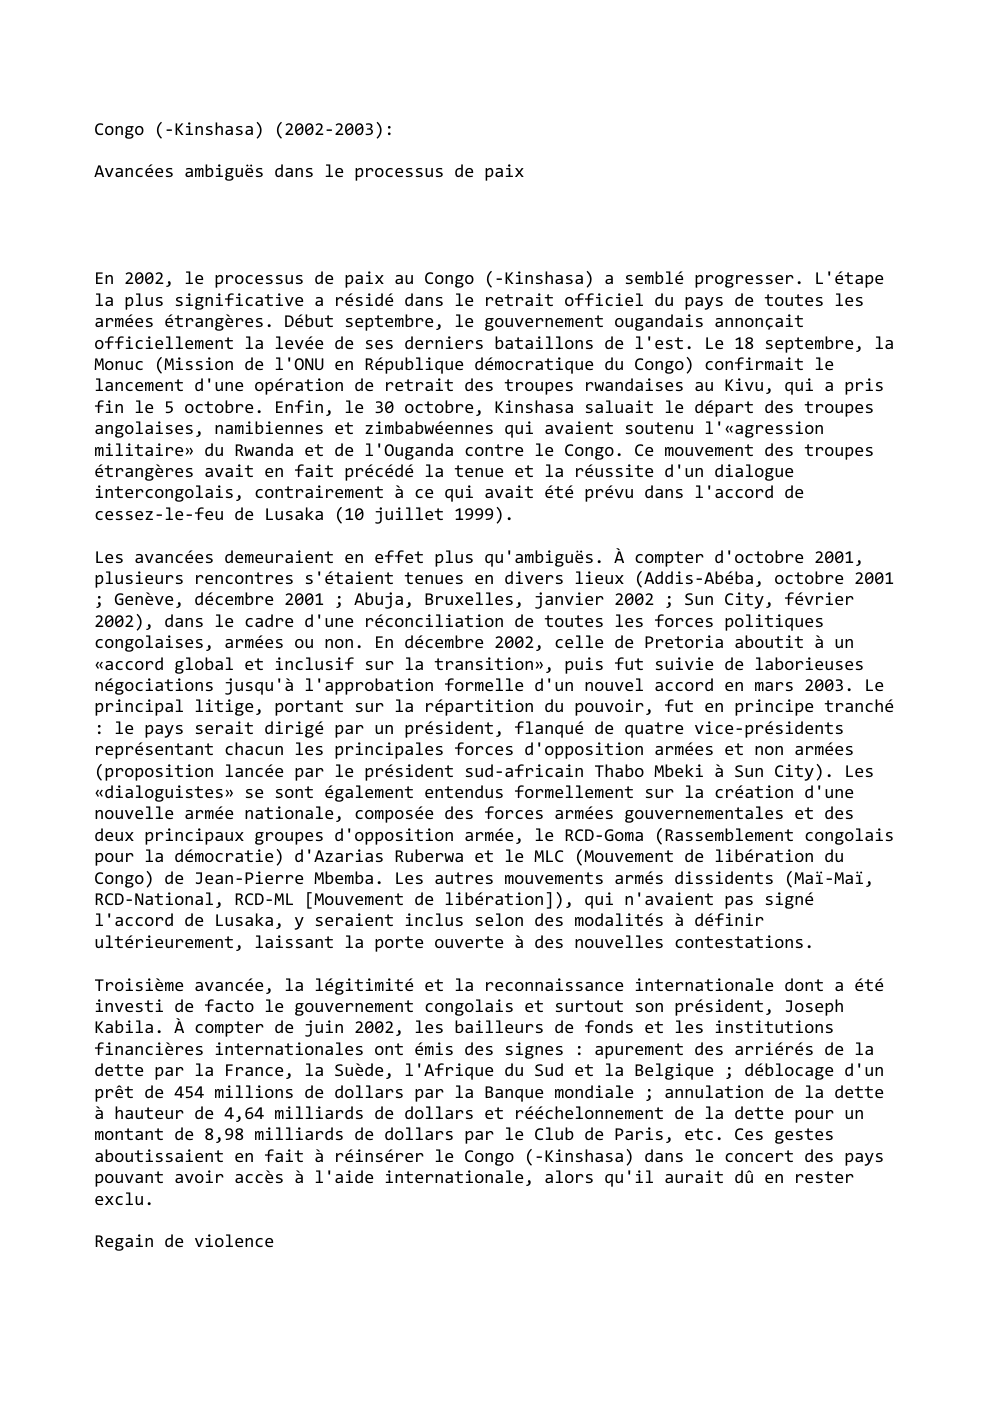 Prévisualisation du document Congo (-Kinshasa) (2002-2003):
Avancées ambiguës dans le processus de paix

En 2002, le processus de paix au Congo (-Kinshasa) a...